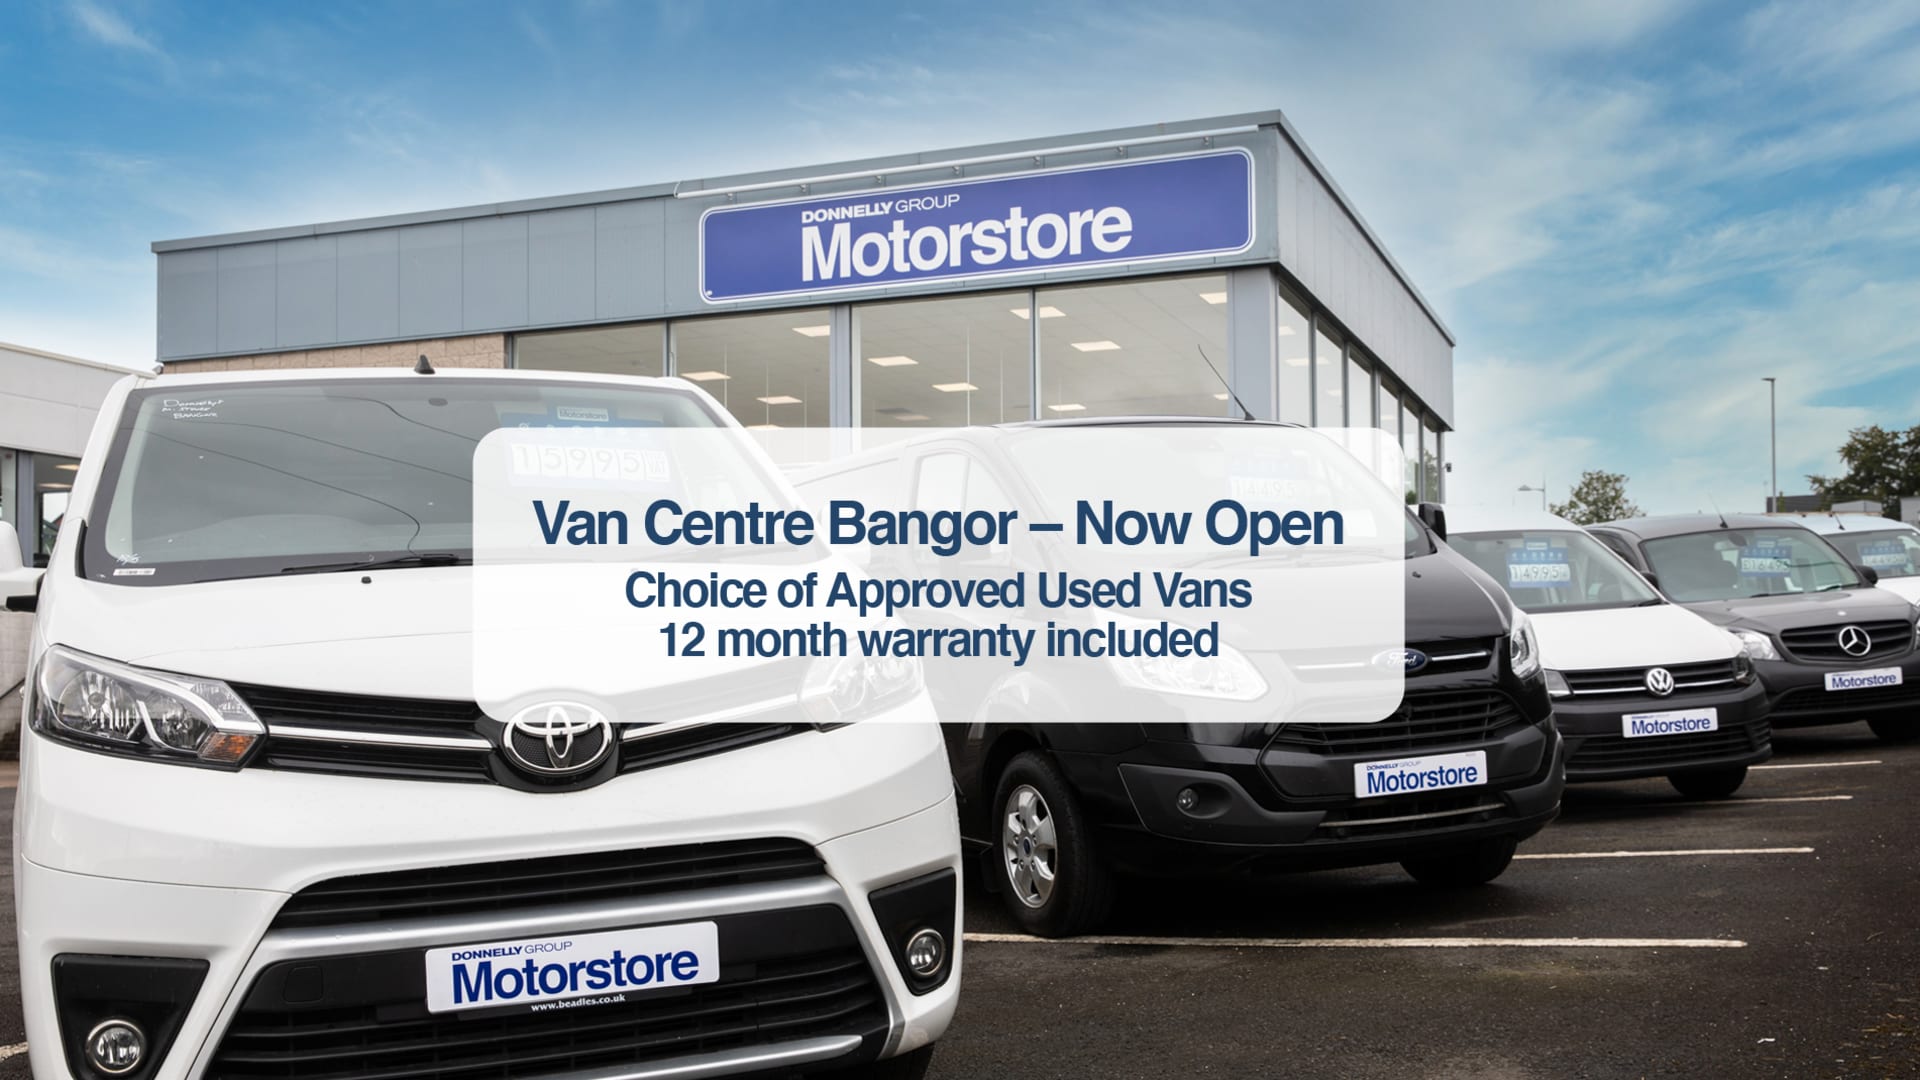 Van Centre Bangor - Now Open